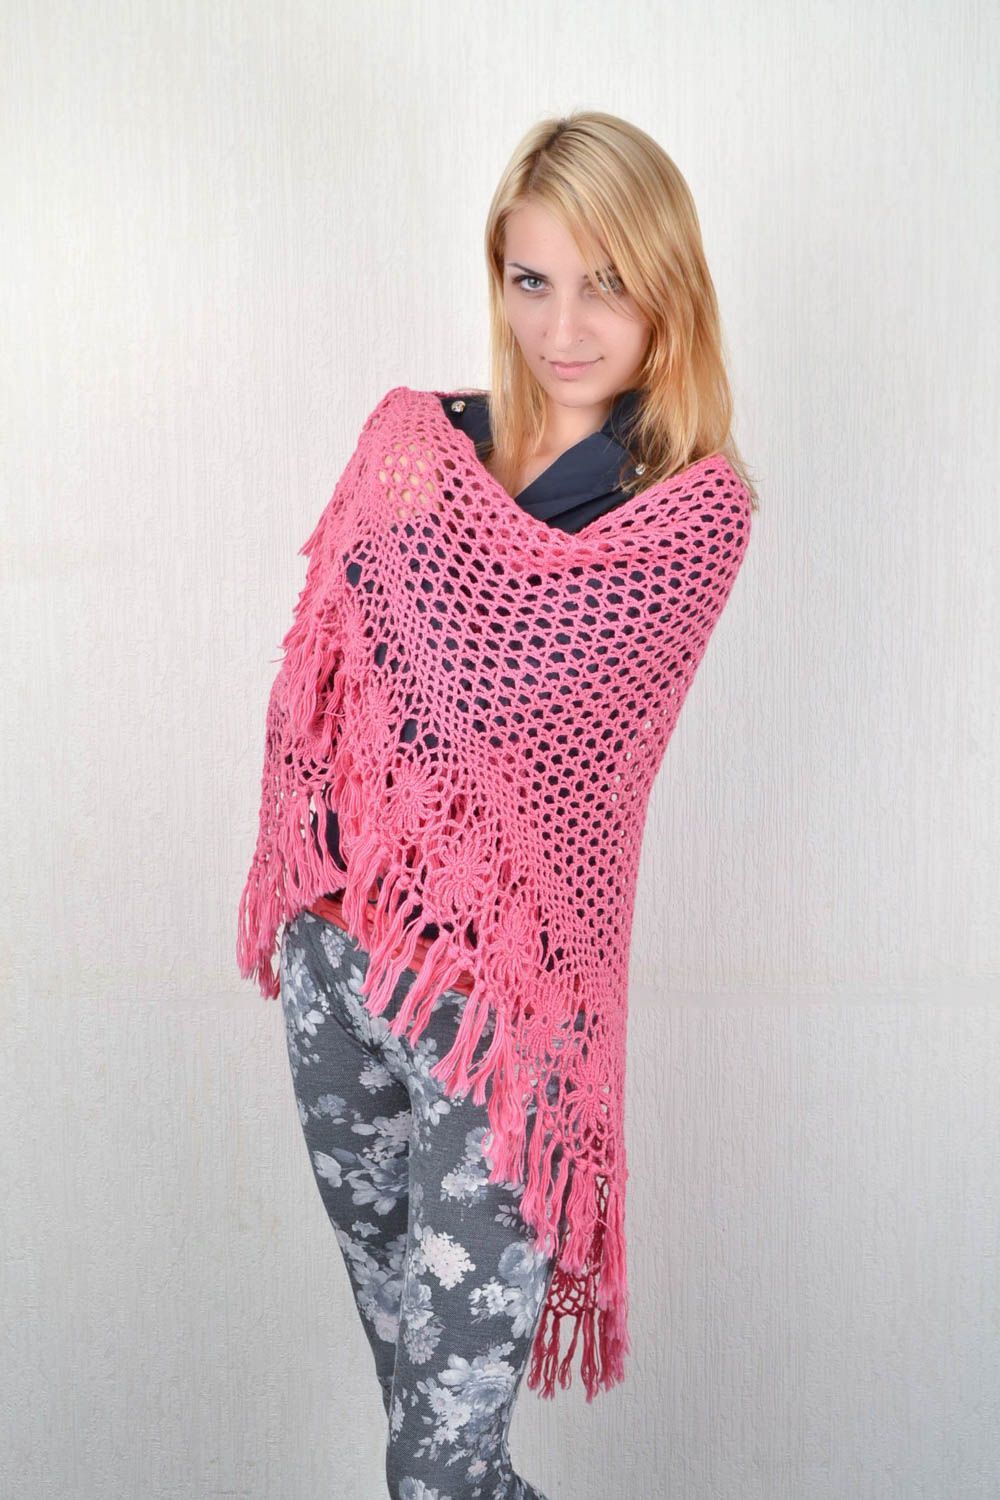 Handmade designer shawl unique winter stylish accessory present for women photo 2